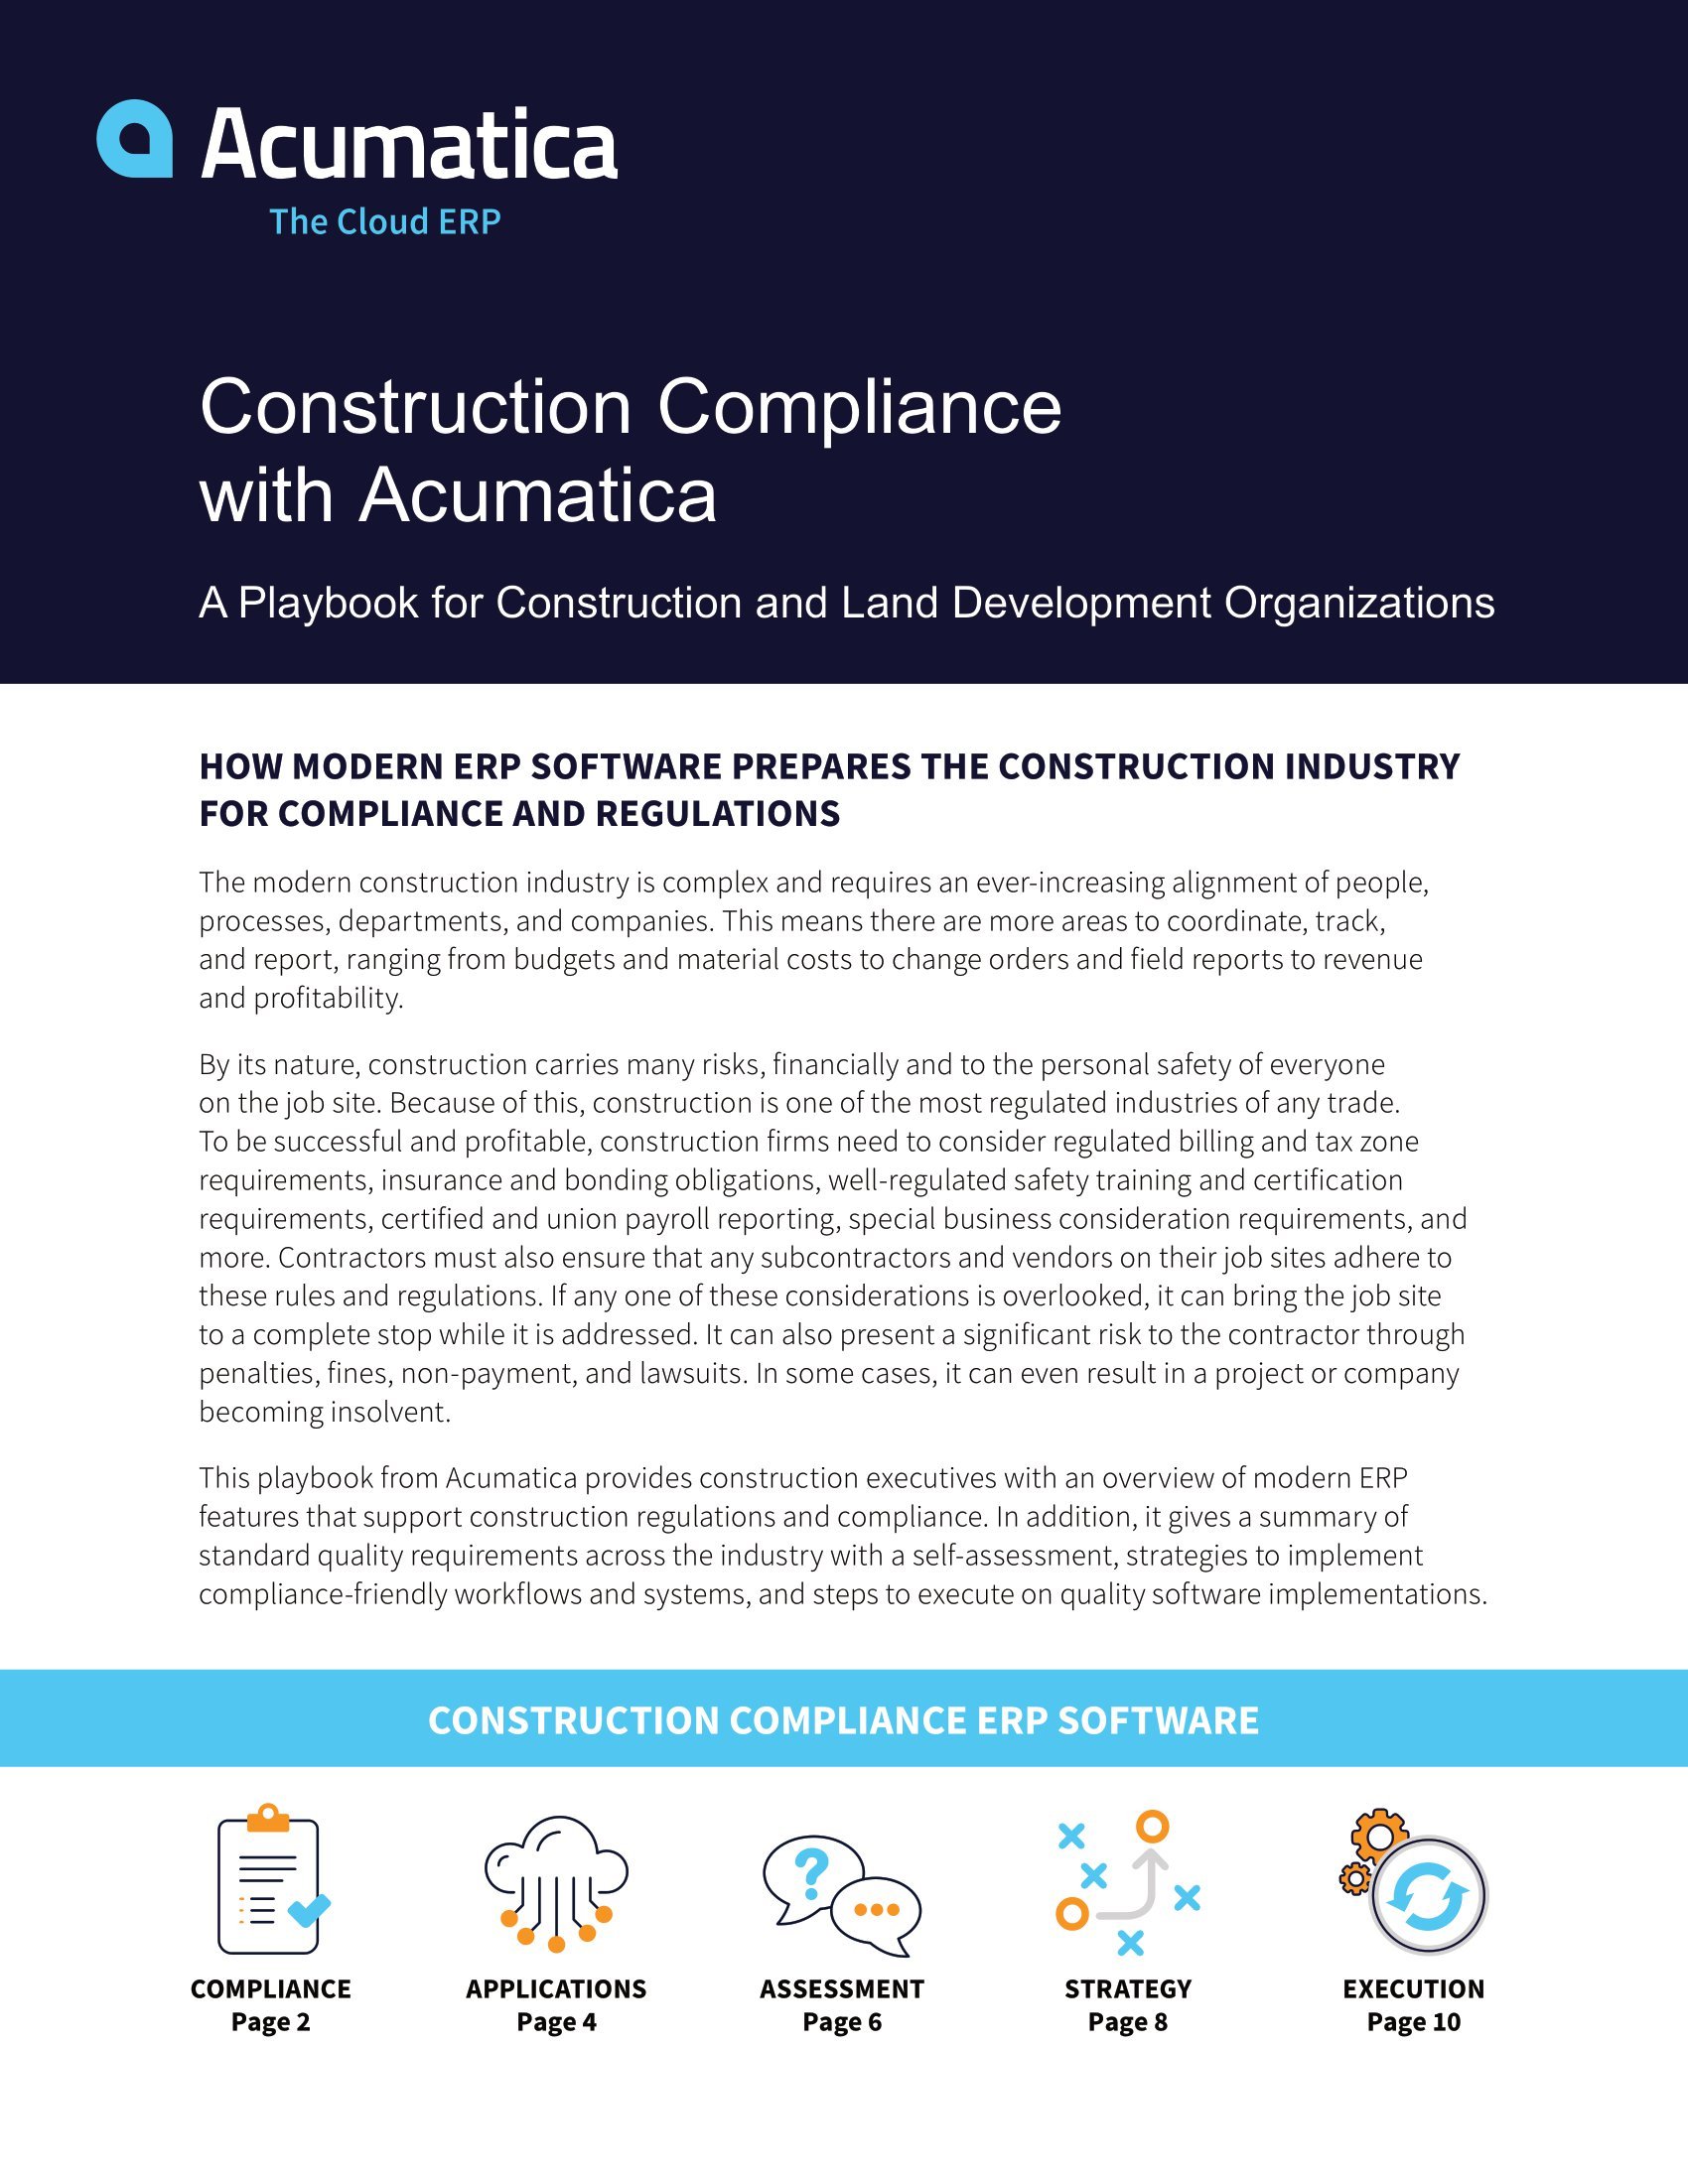 Autant de réglementations en matière de construction, aussi faciles à gérer avec le bon logiciel de conformité en matière de construction, page 0